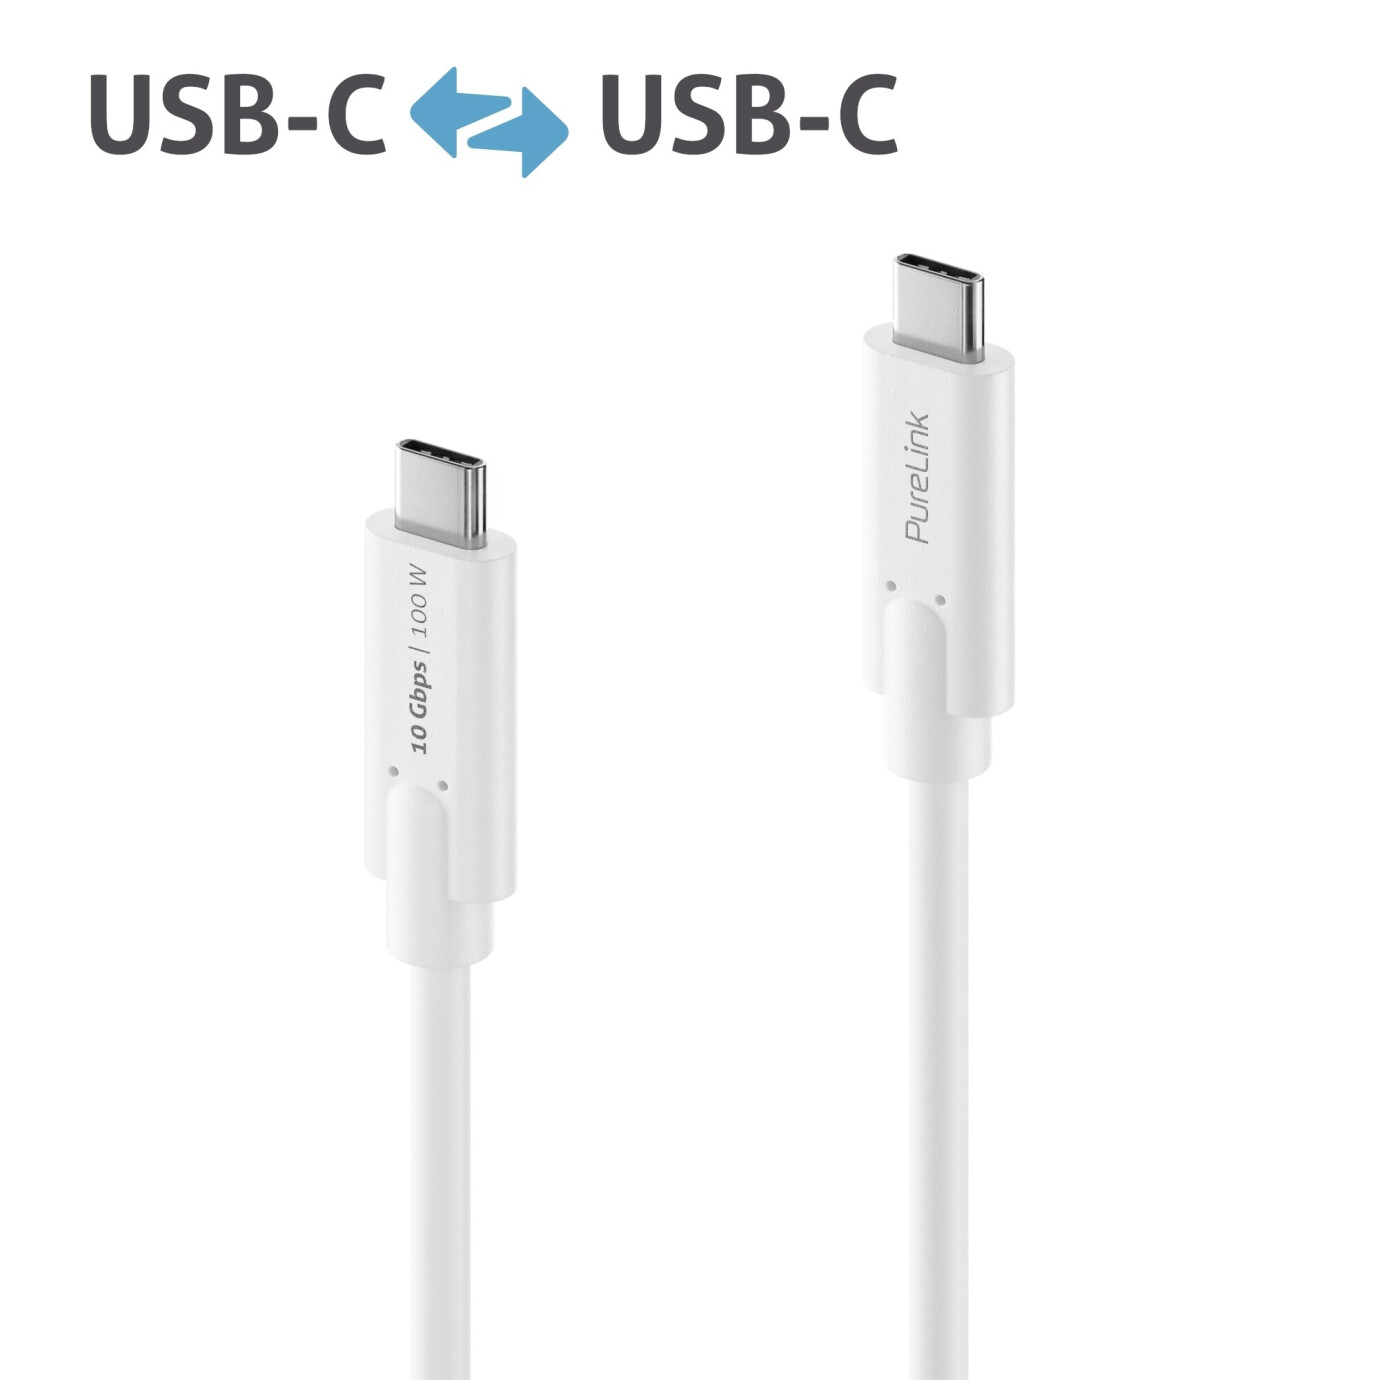 Purelink IS2510-015 USB-C auf USB-C (Gen 2) Kabel 1,5m weiß